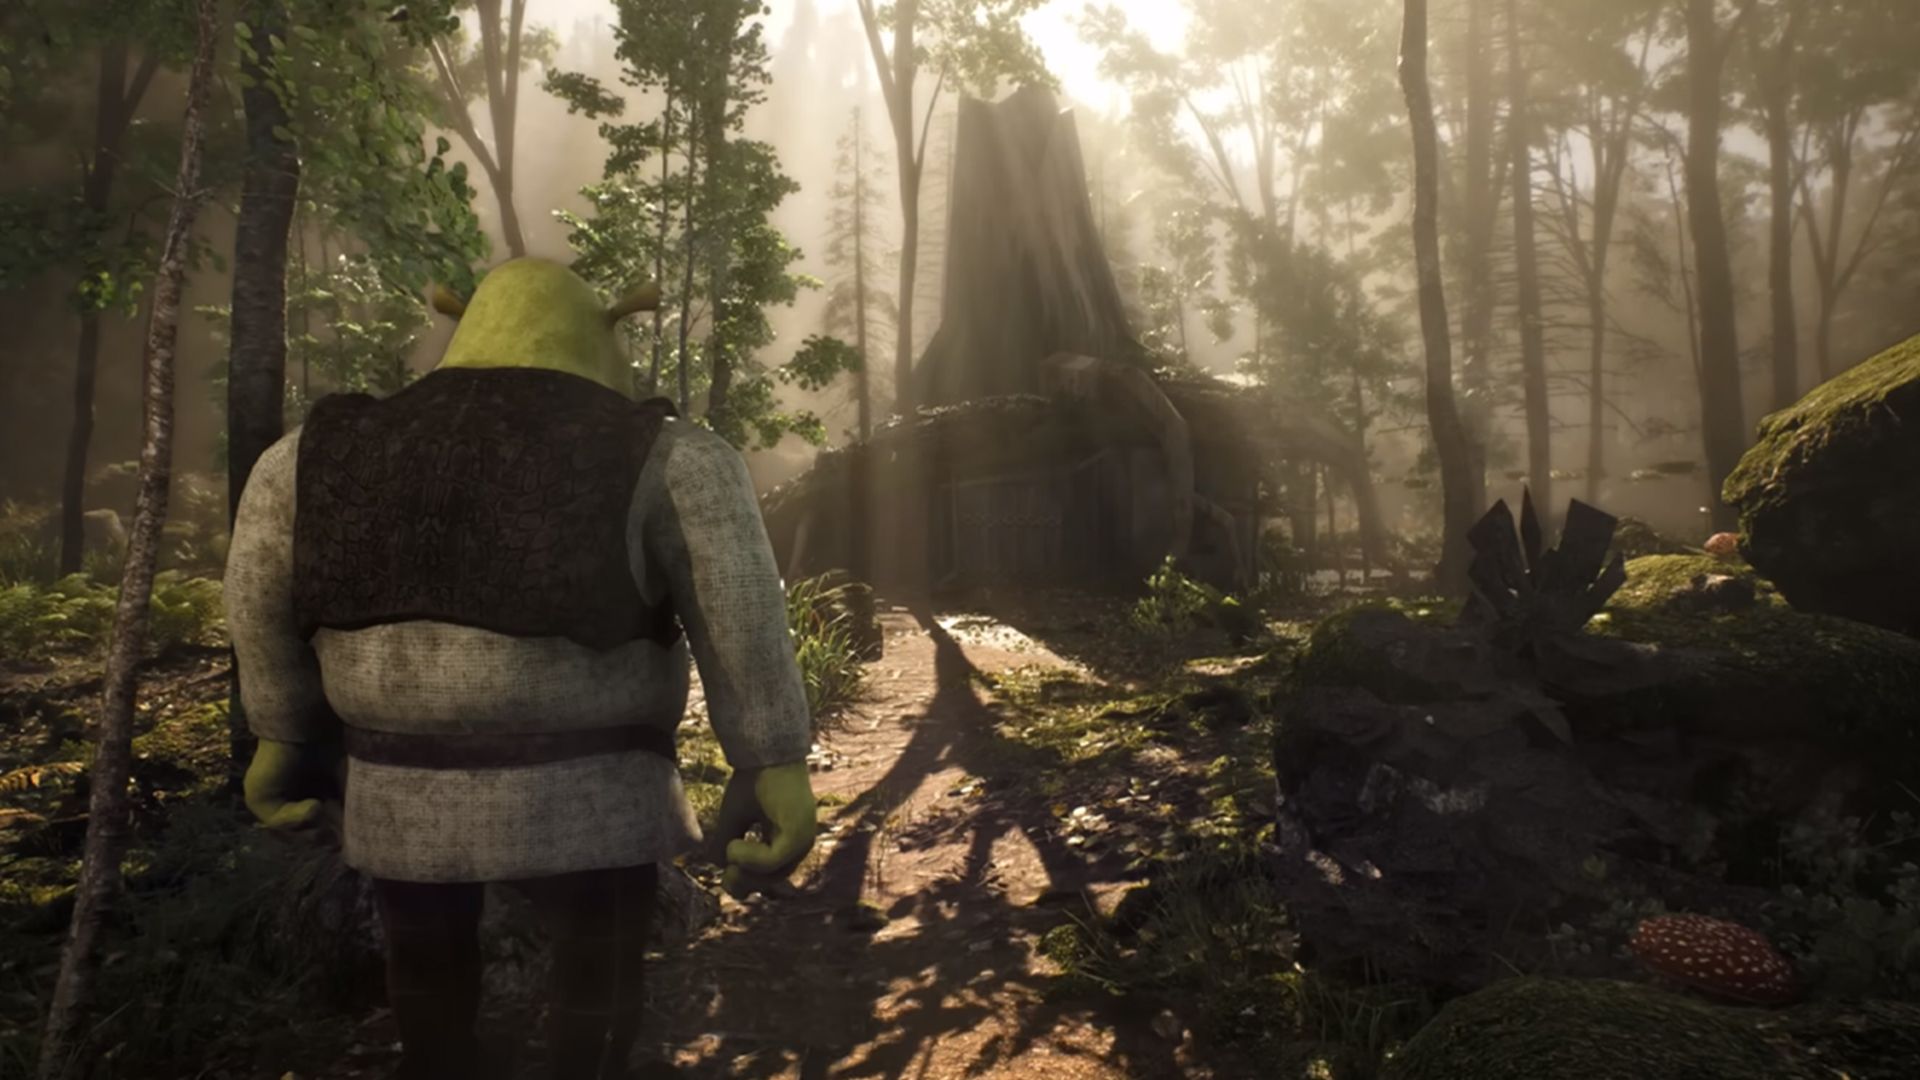 Трейлер игры про Шрека на Unreal Engine 5 покорил сеть: интересное видео